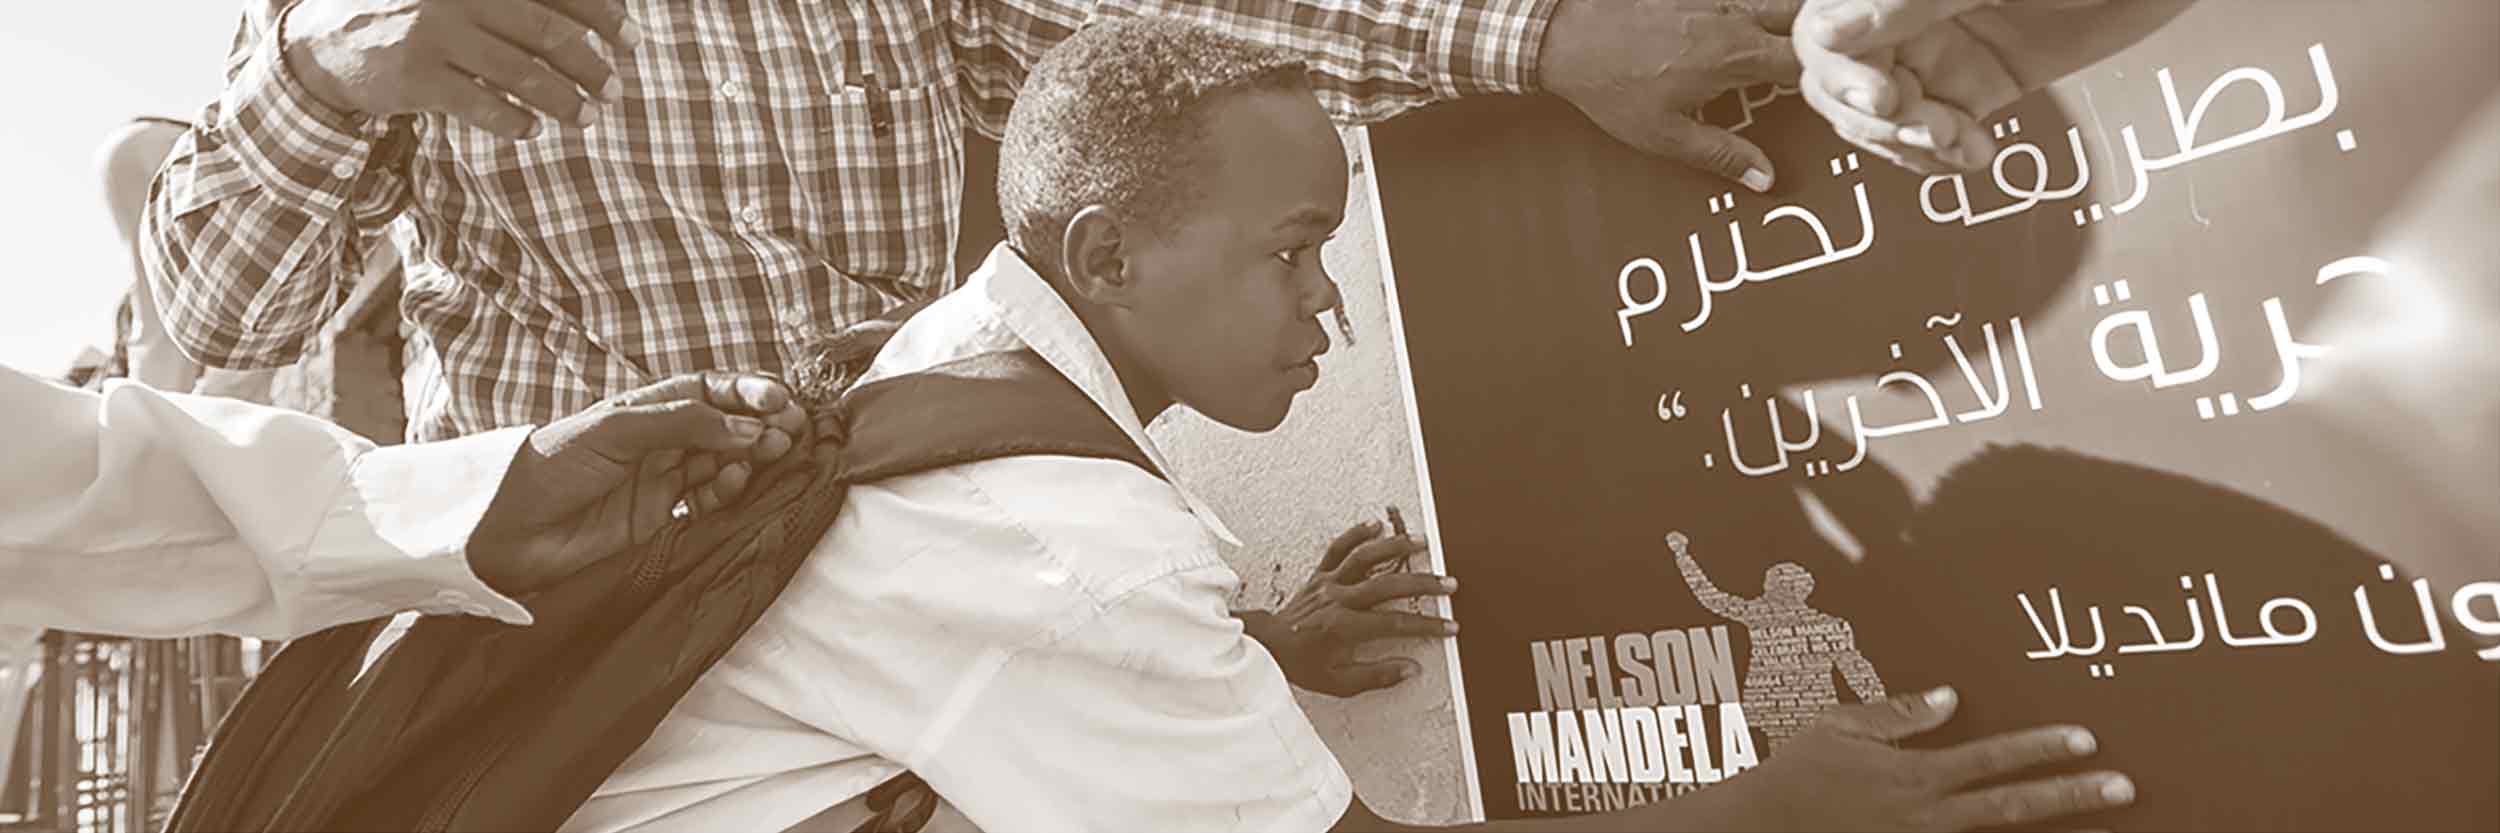 Des soldats de la paix de la Mission des Nations Unies au Darfour mettent place avec des étudiants une affiche pour la commération de la Journée Nelson Mandela dans une école primaire du camp d'Al Salaam pour réfugiés près d'El Fasher, Darfour Nord. Copytight ONU / Albert González Farran